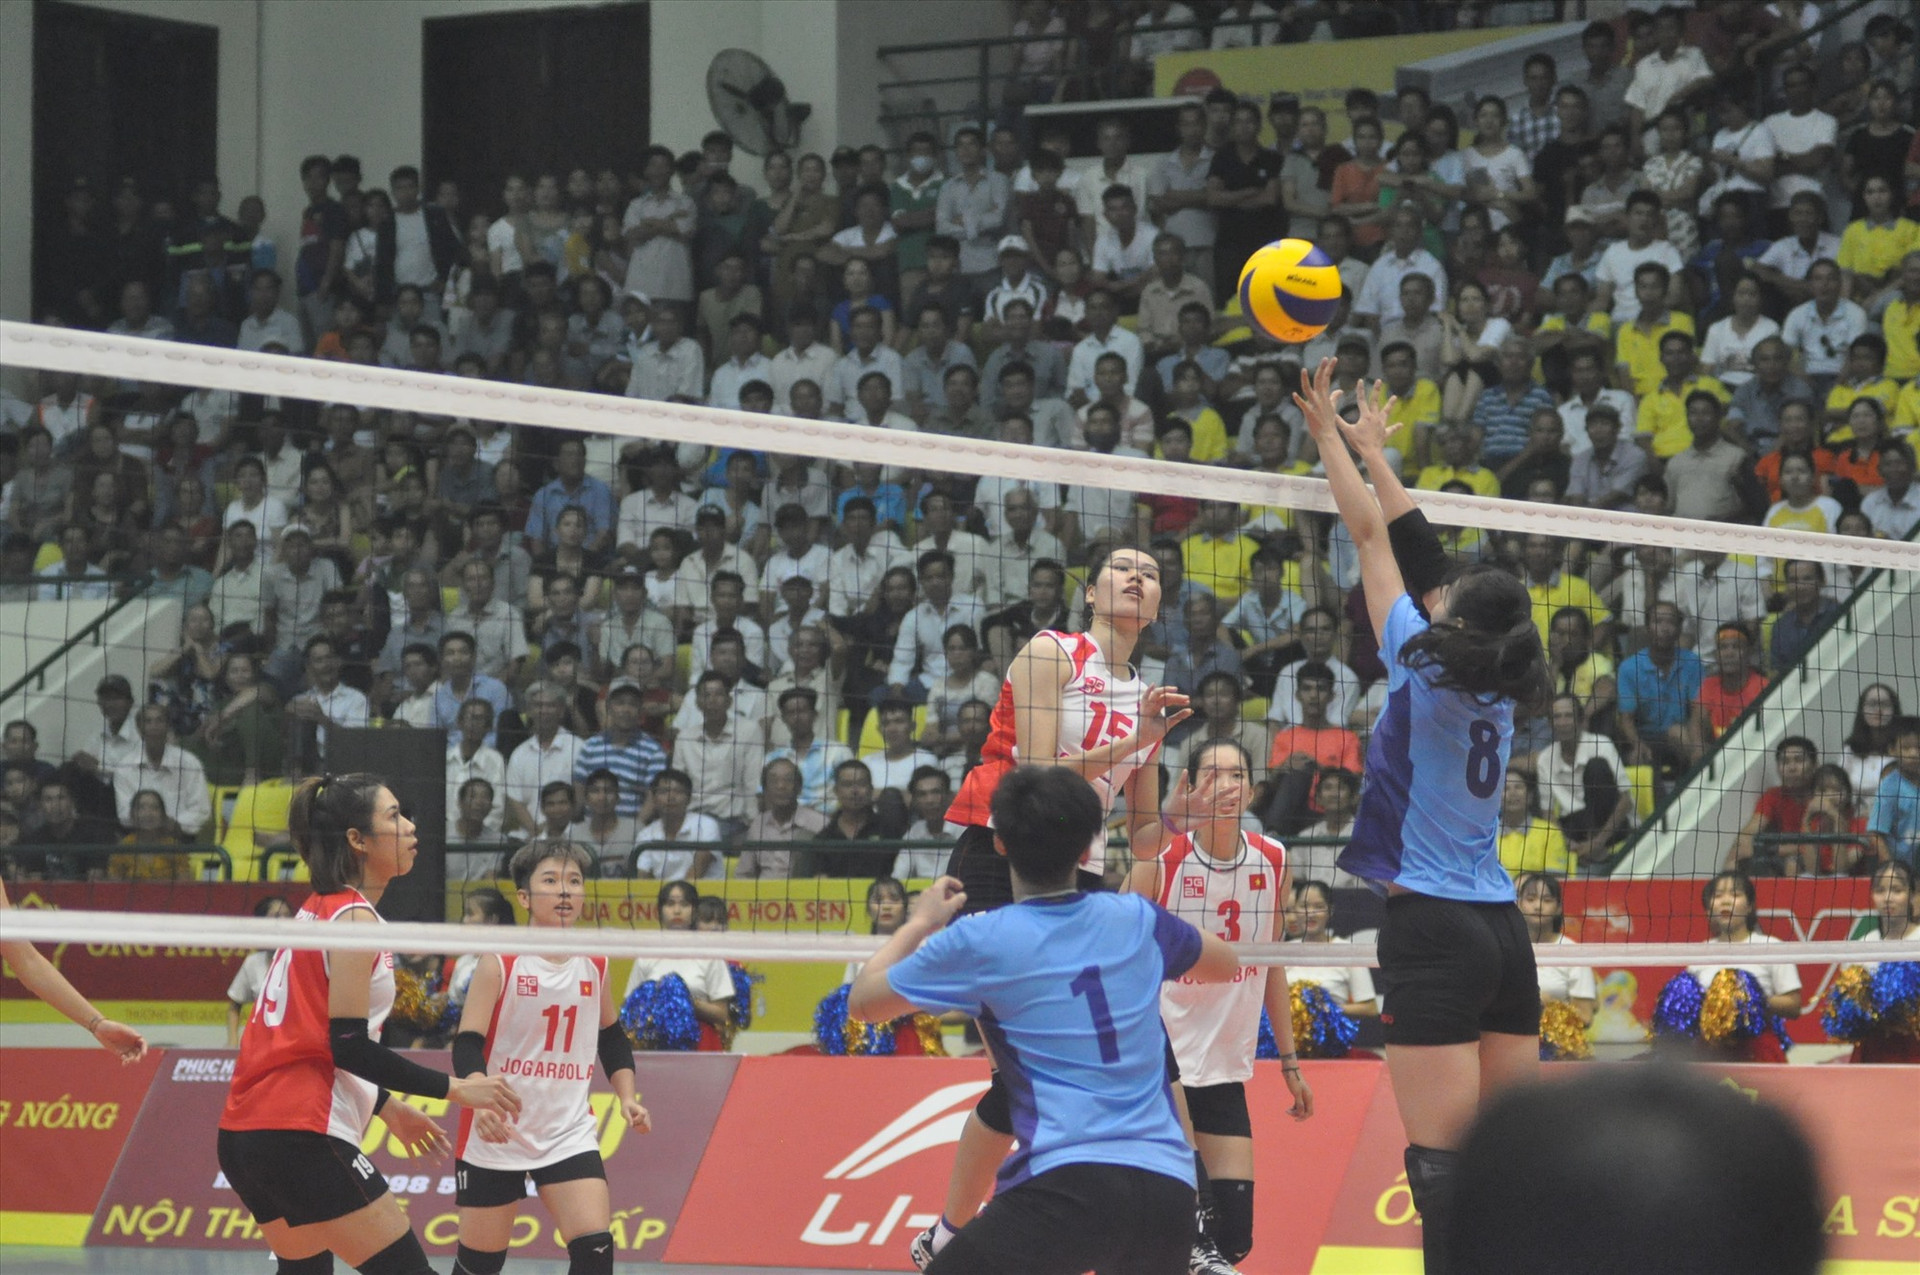 Giải bóng chuyền quốc tế VTV Cup diễn ra tại Quảng Nam được xem là sự kiện lớn. Ảnh: T.VY